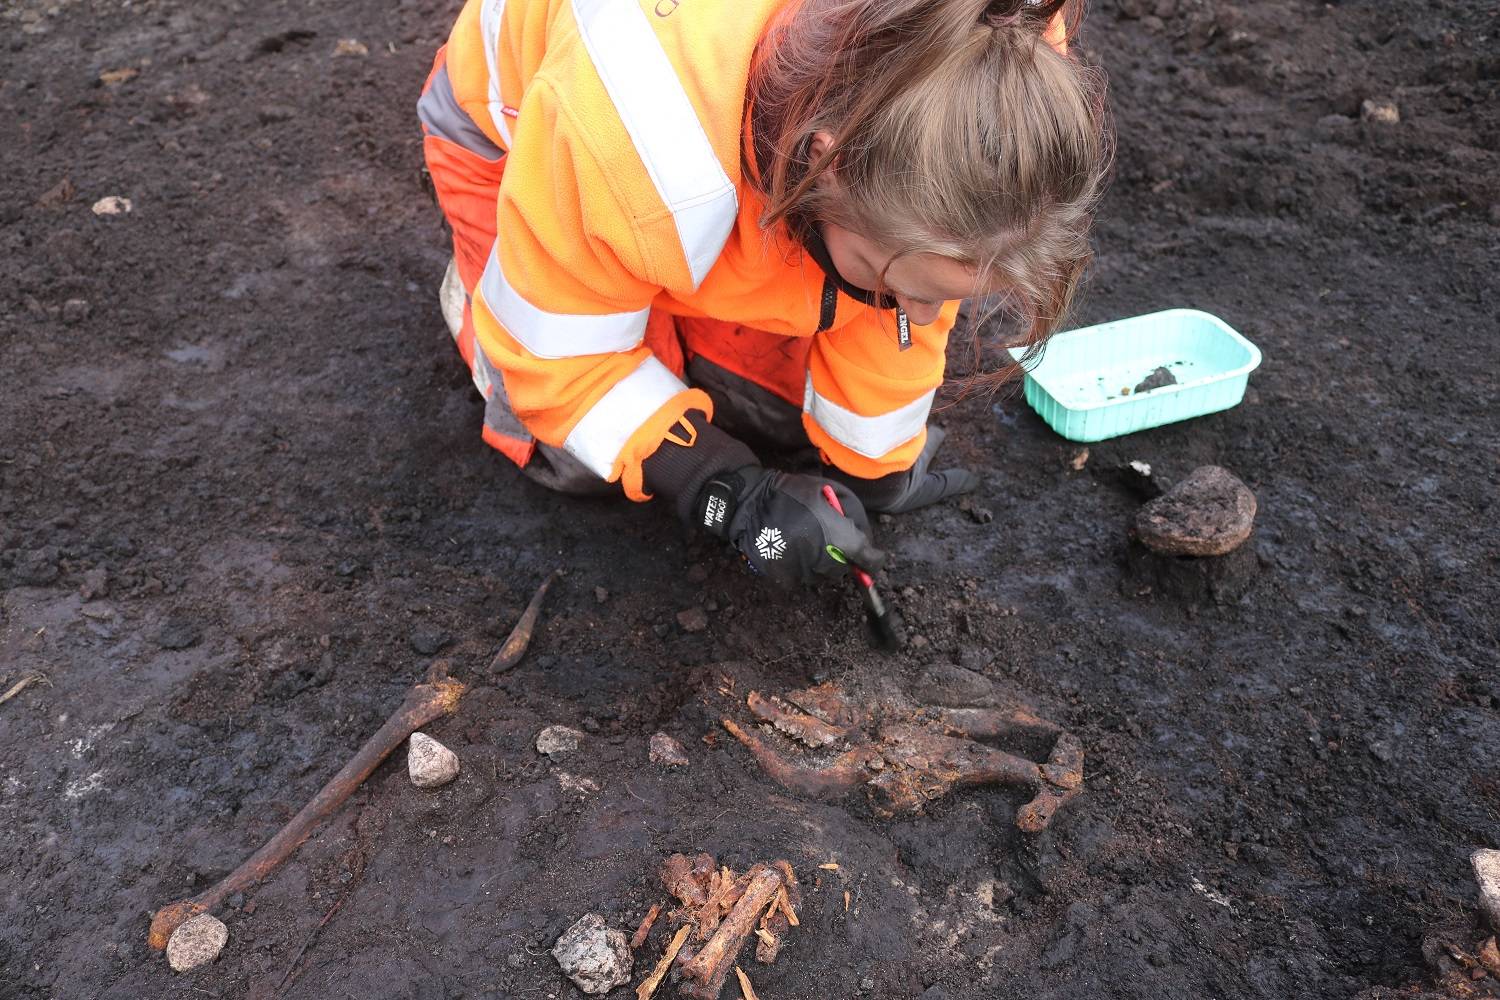 Archeologe Lea Mohr Hansen reinigt de dierenbotten die samen met het menselijk skelet zijn gevonden.